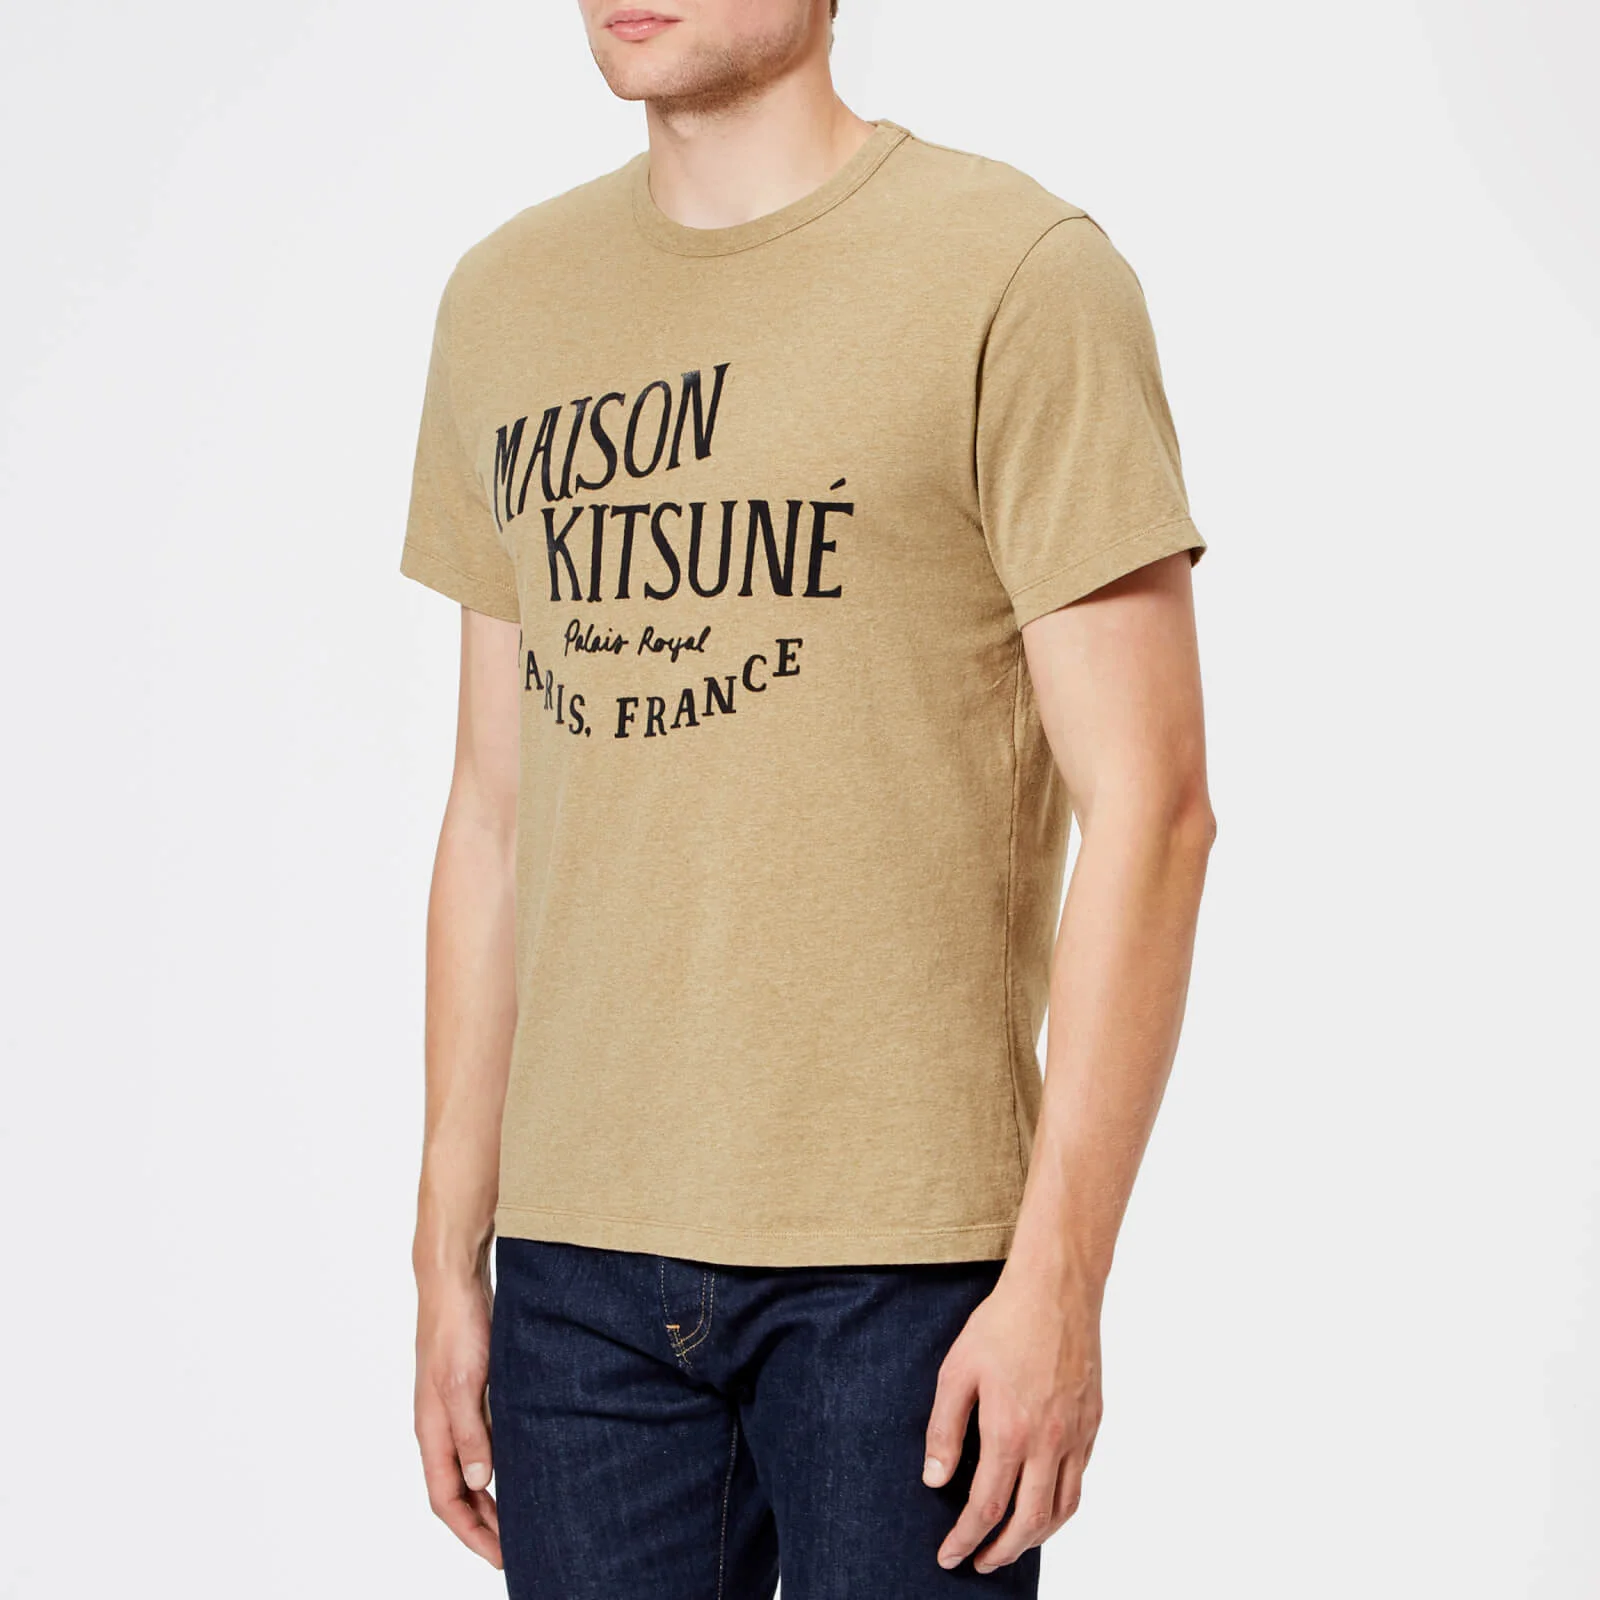 Maison Kitsuné Men's Palais Royal Crew Neck T-Shirt - Beige Melange Image 1